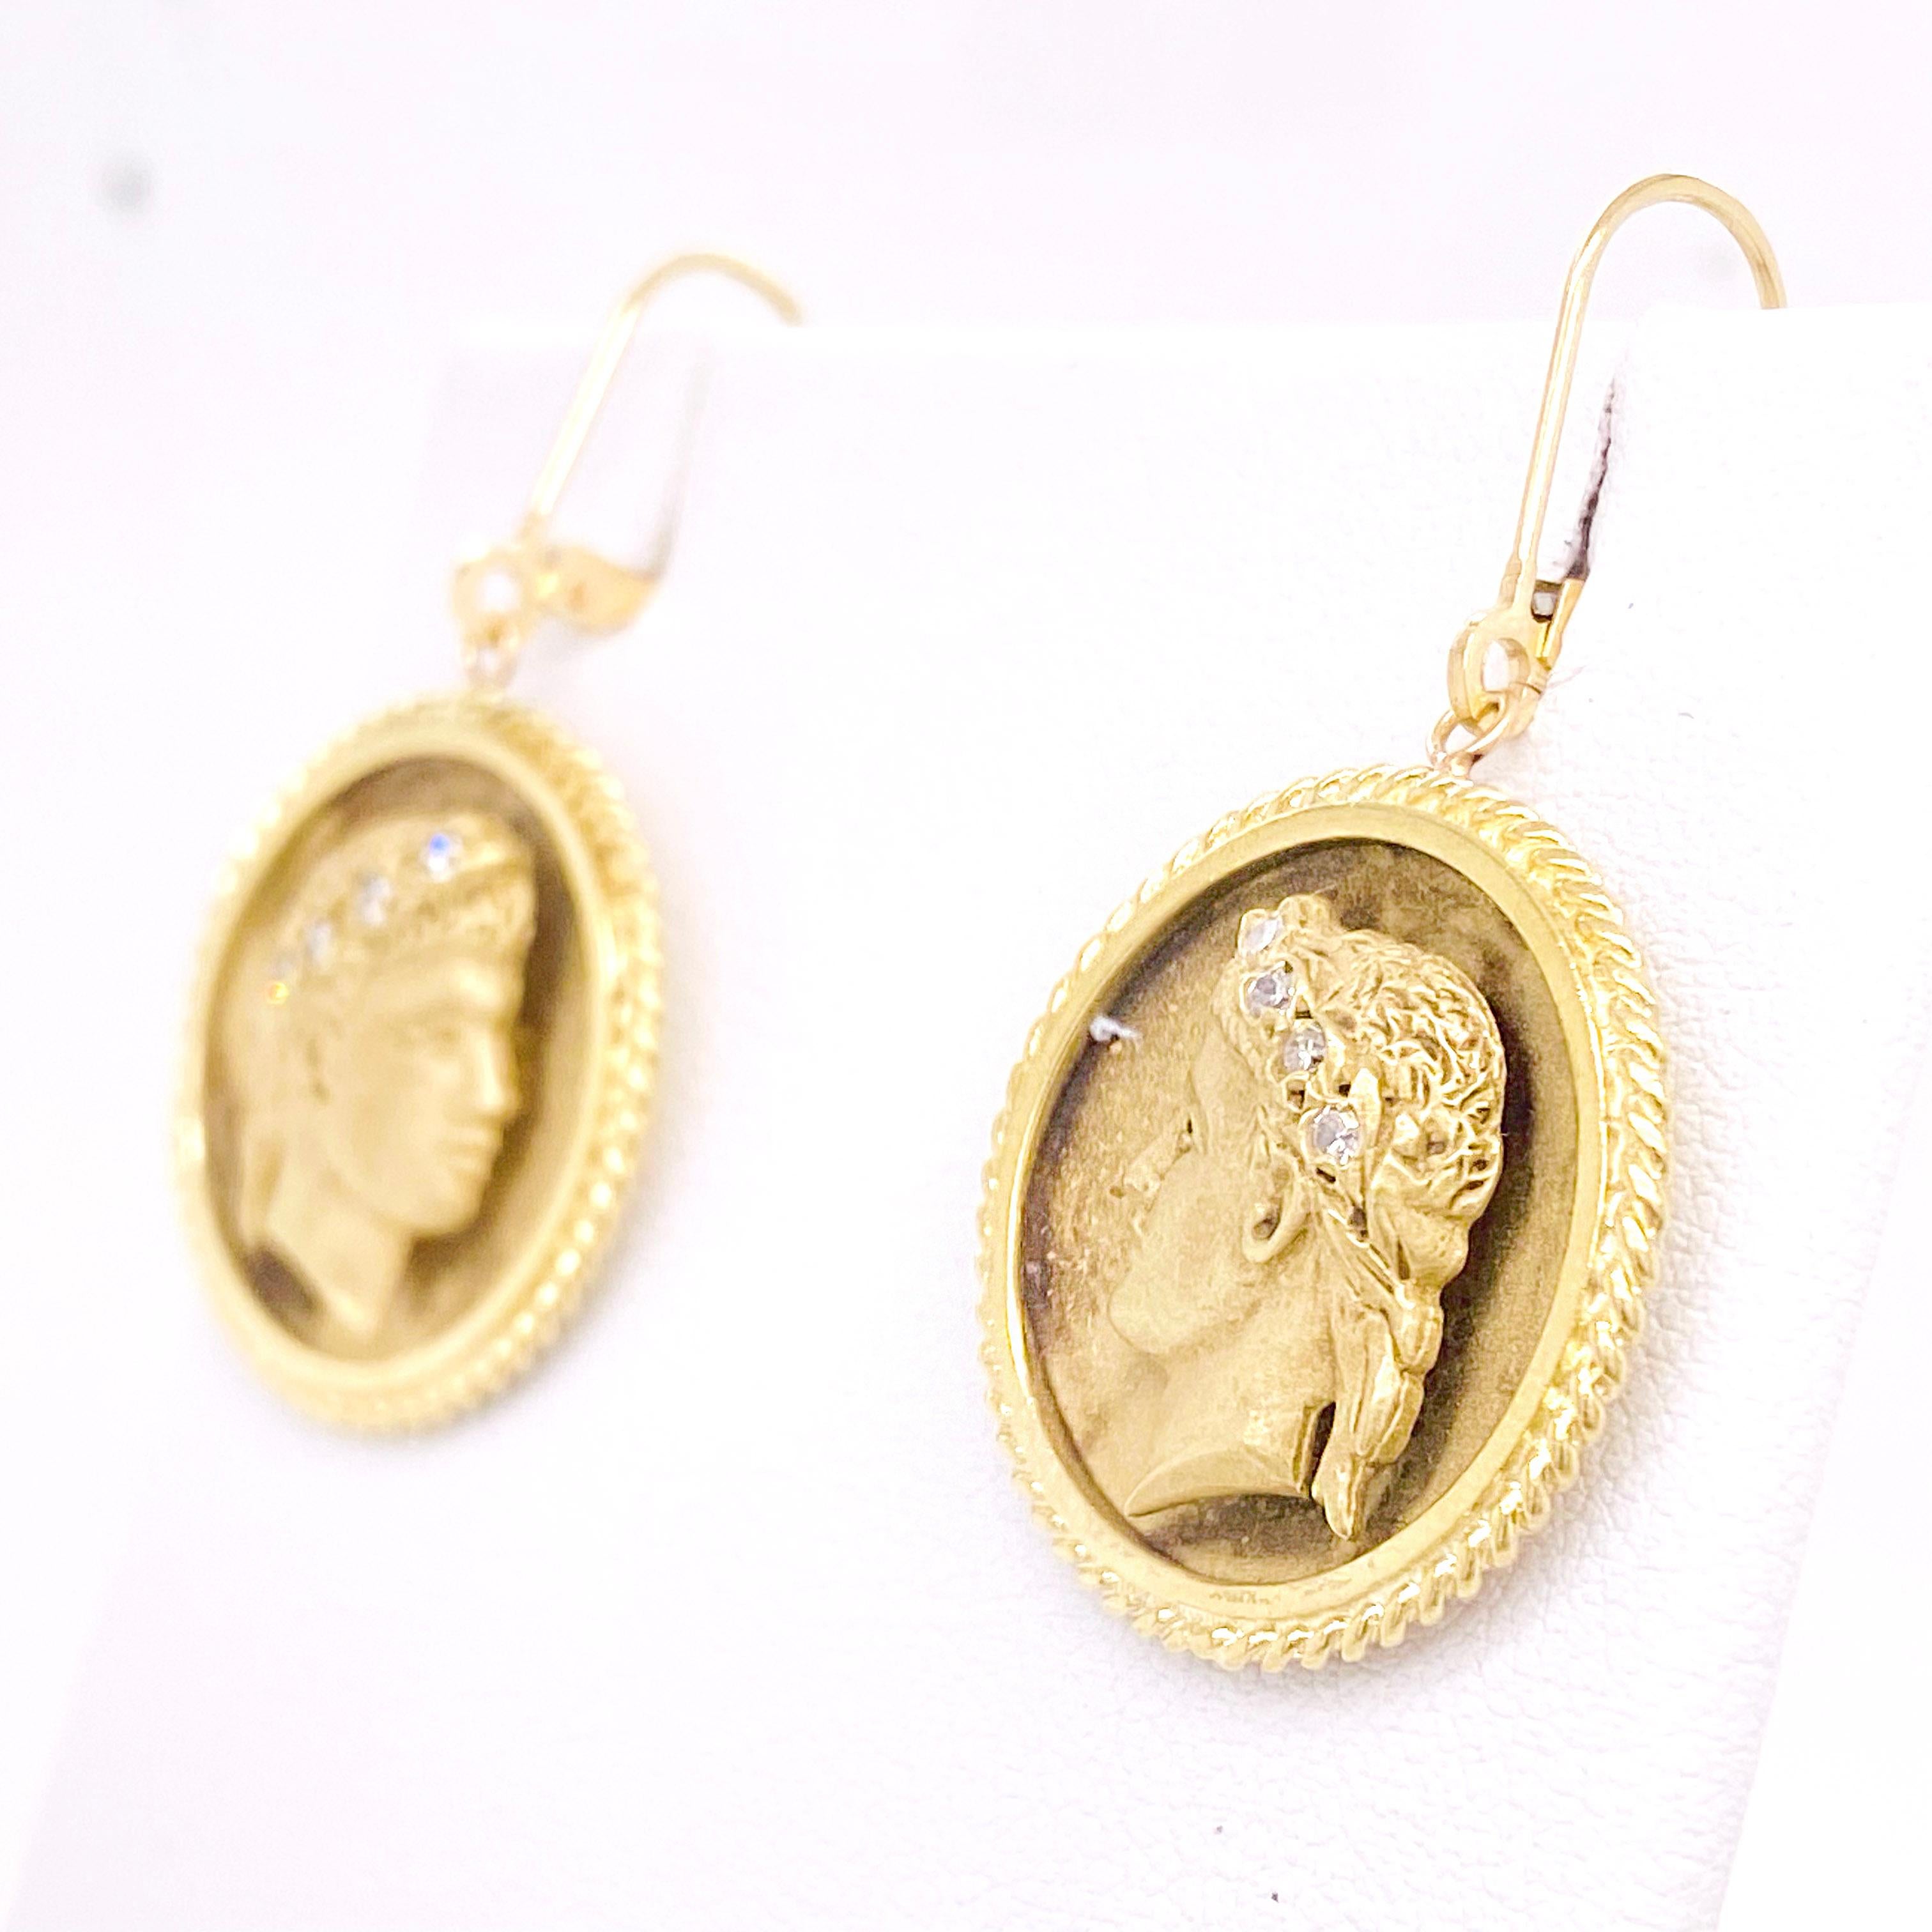 Les boucles d'oreilles romaines personnalisées en or jaune 18 carats présentent le profil latéral d'un dieu romain qui porte quatre diamants dans chacun de ses cheveux. Les boucles d'oreilles sont des images miroir l'une de l'autre et la tête est